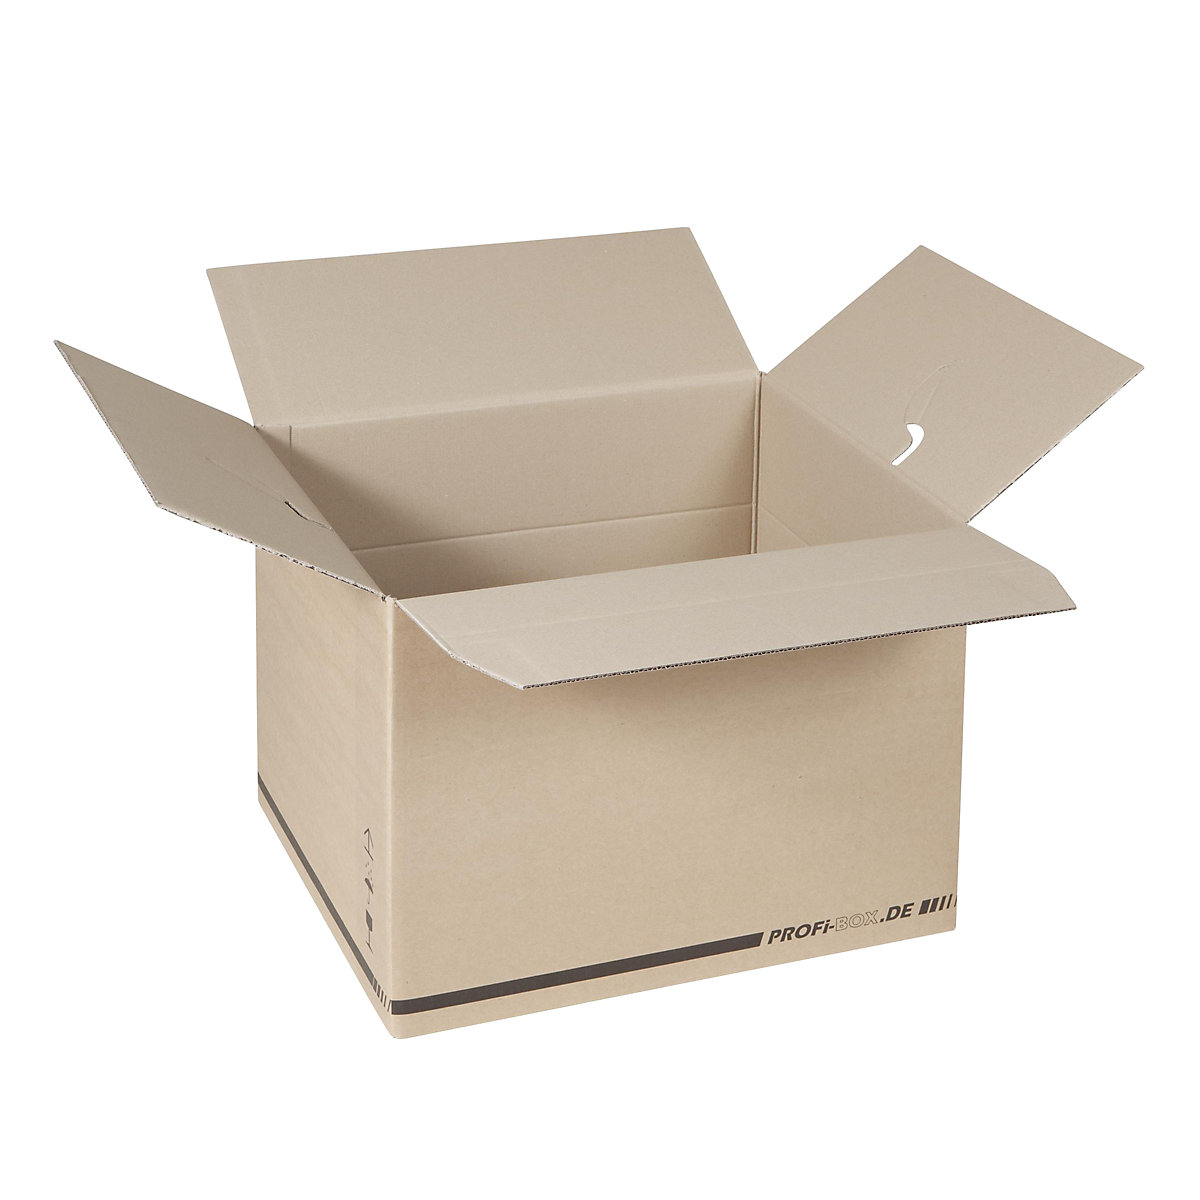 Profesionalne škatle, iz dvovalnega kartona, notranje mere 476 x 376 x 340 mm, FEFCO 0216, DE 50 kosov-1